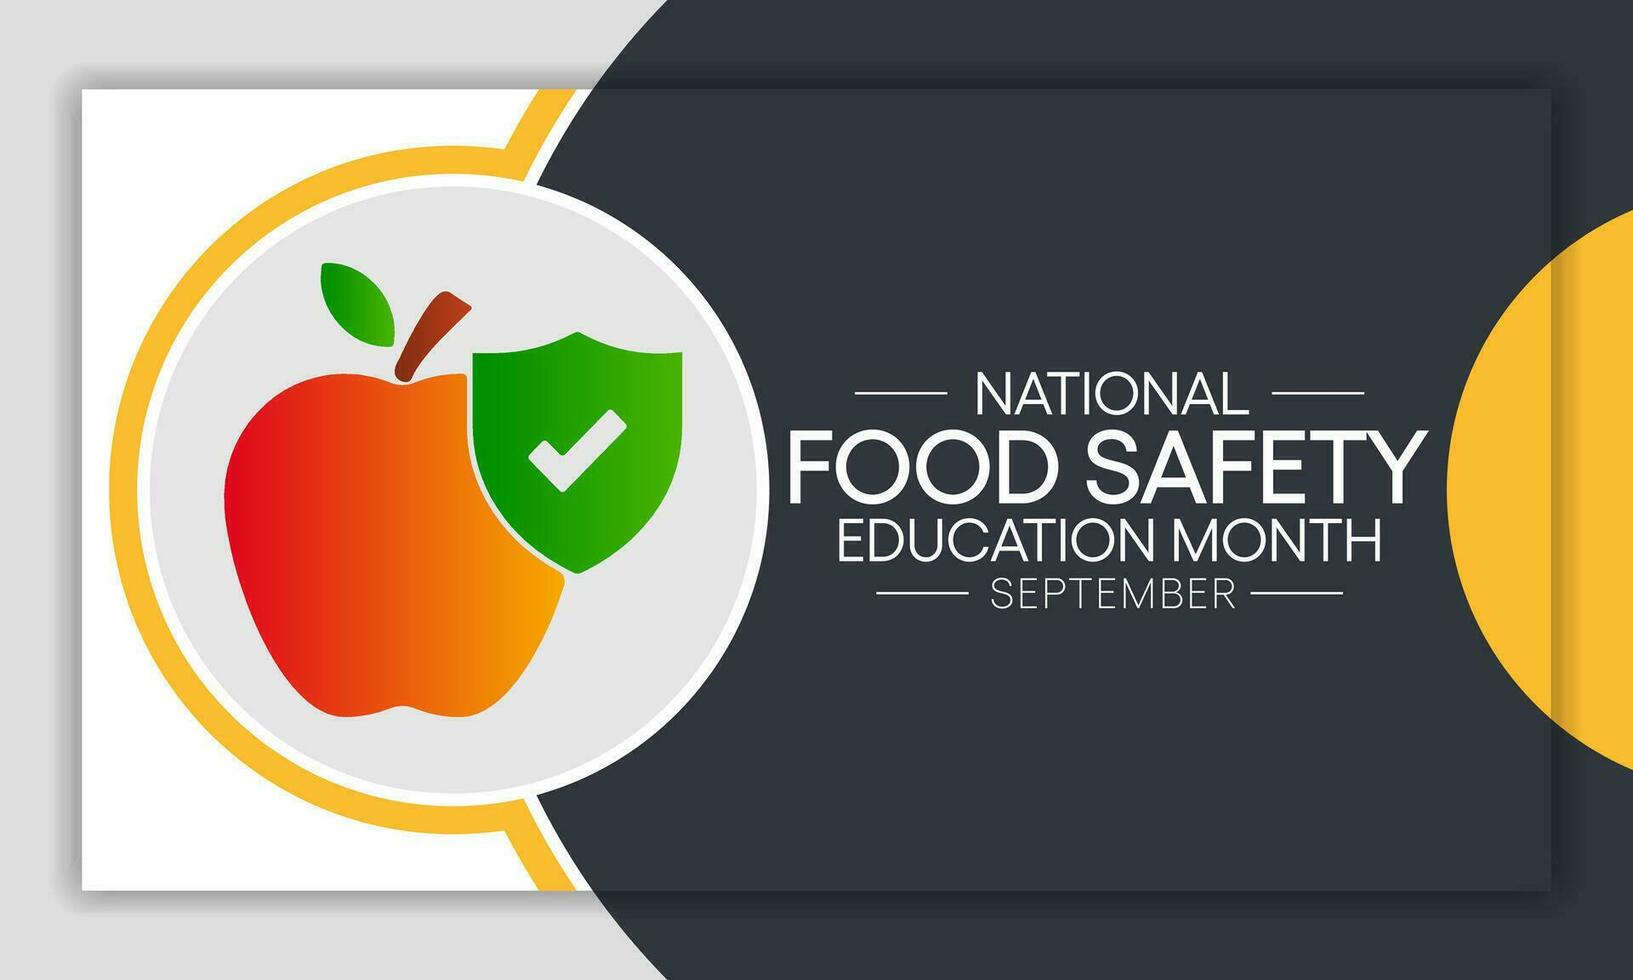 nationale nourriture sécurité éducation mois observé chaque pendant septembre. vecteur illustration